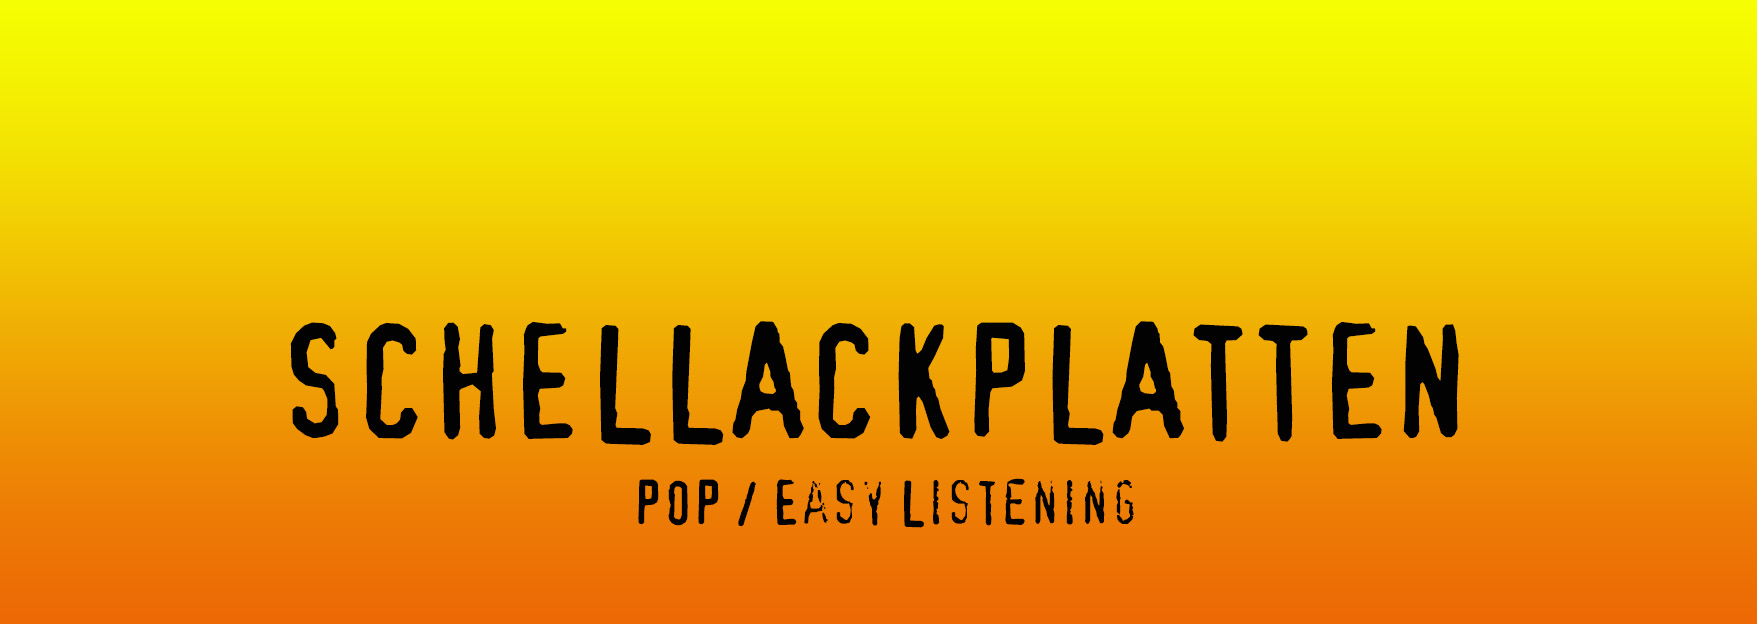 Schellackplatten der Kategorie Pop / Easy Listening